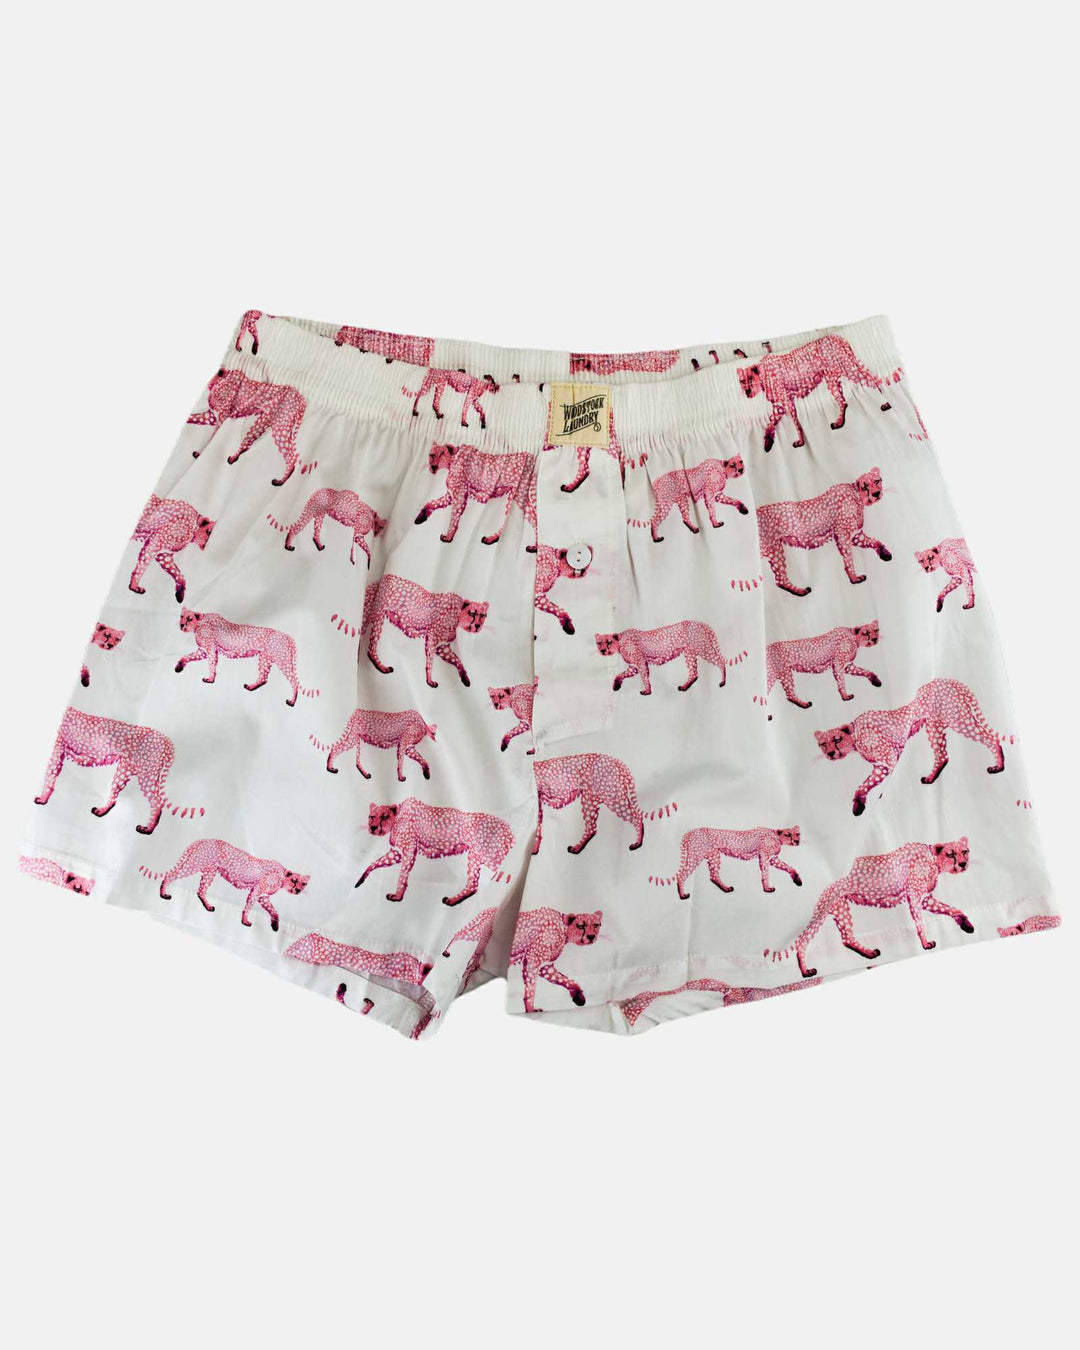 Mens pink boxer shorts - pink cheetah